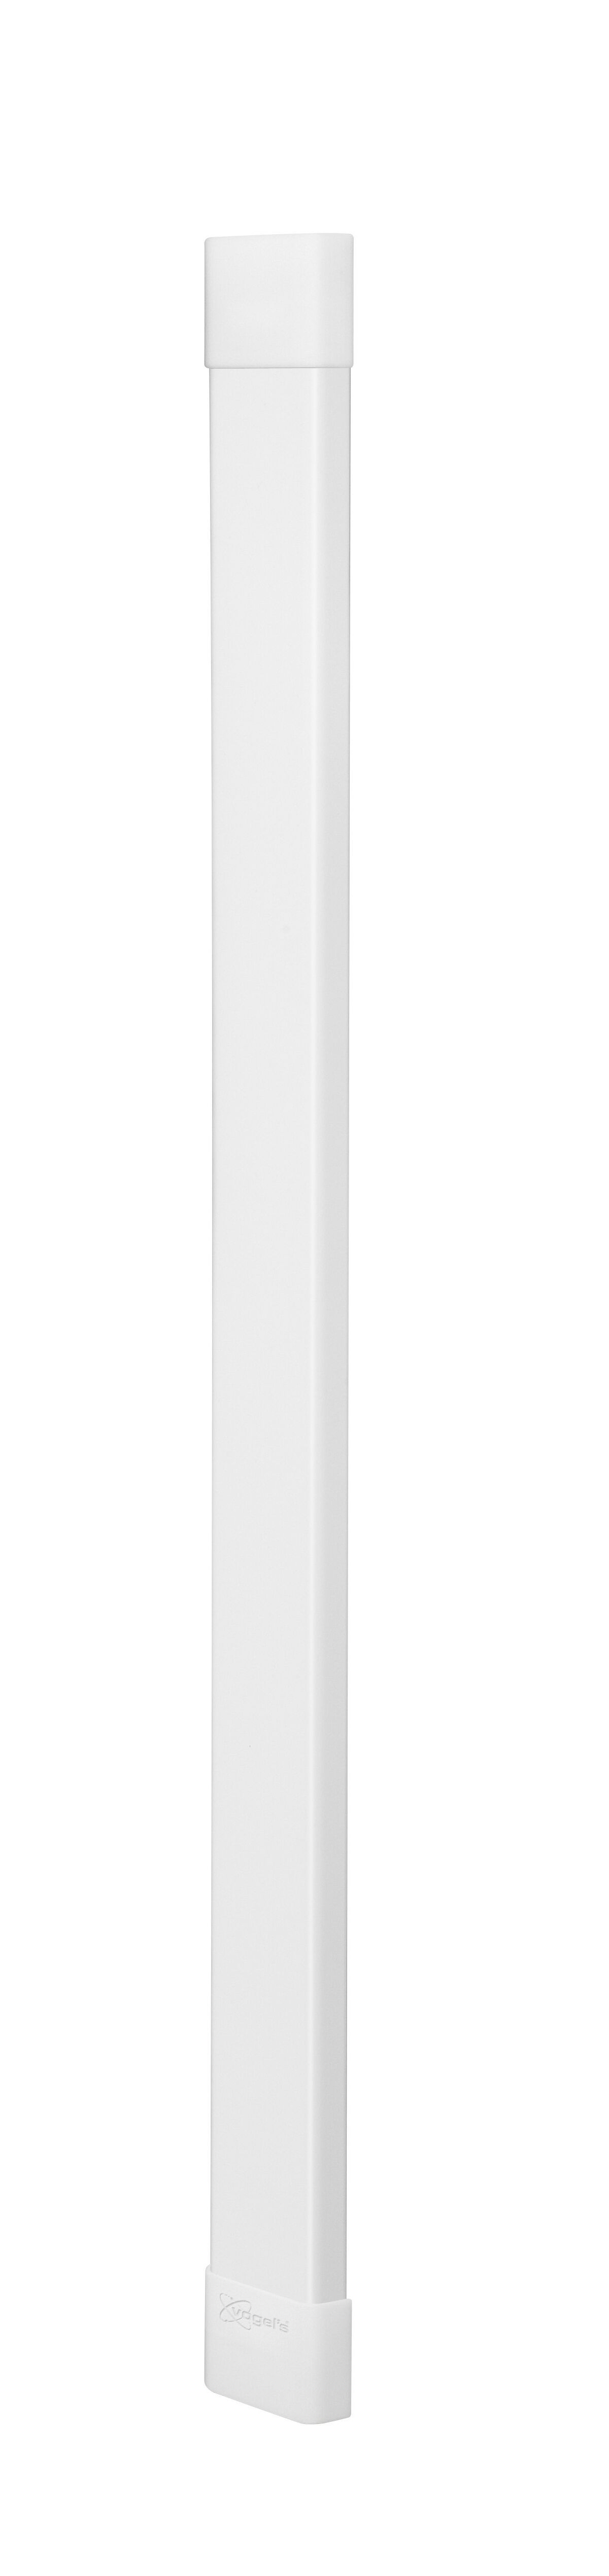 Vogel's CABLE 8 kabelgoot (wit) - Max. aantal kabels in kabelgoot: Tot 8 kabels - Lengte: 94 cm - Product